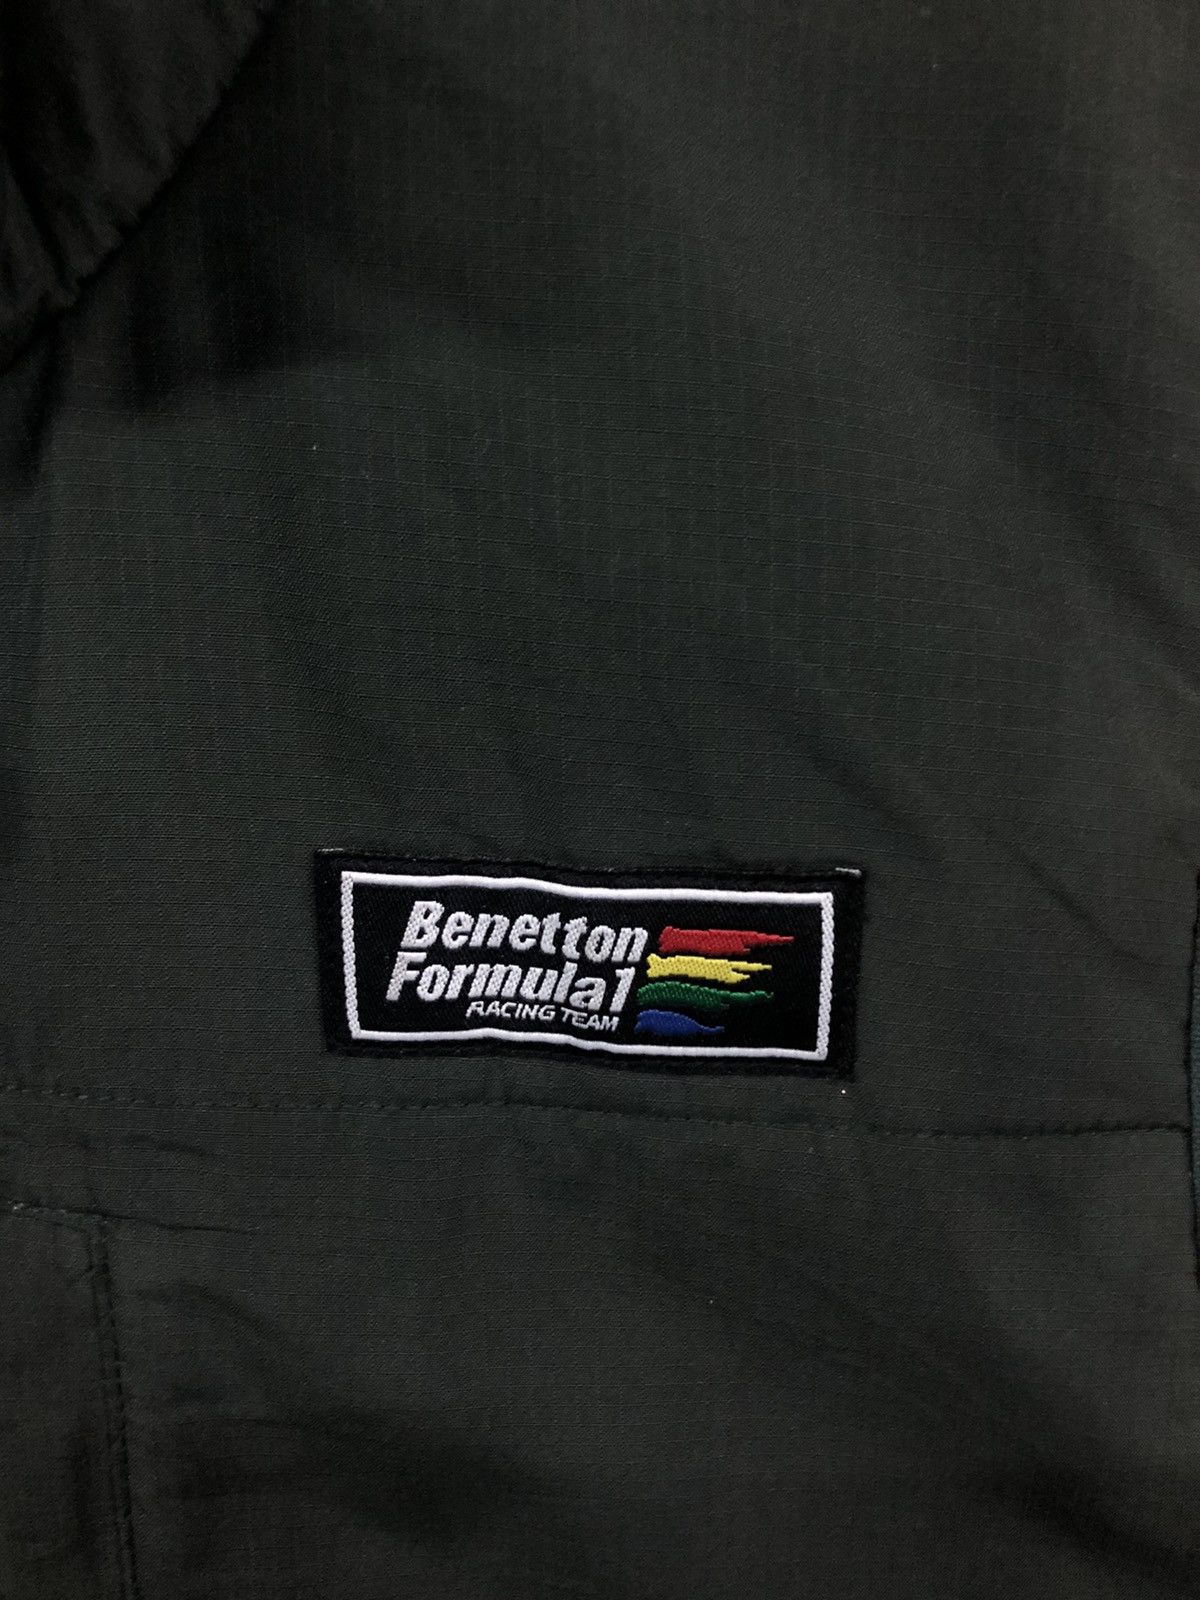 Sports Specialties - Benetton Formula 1 Racing Team Vest Jacket - 5